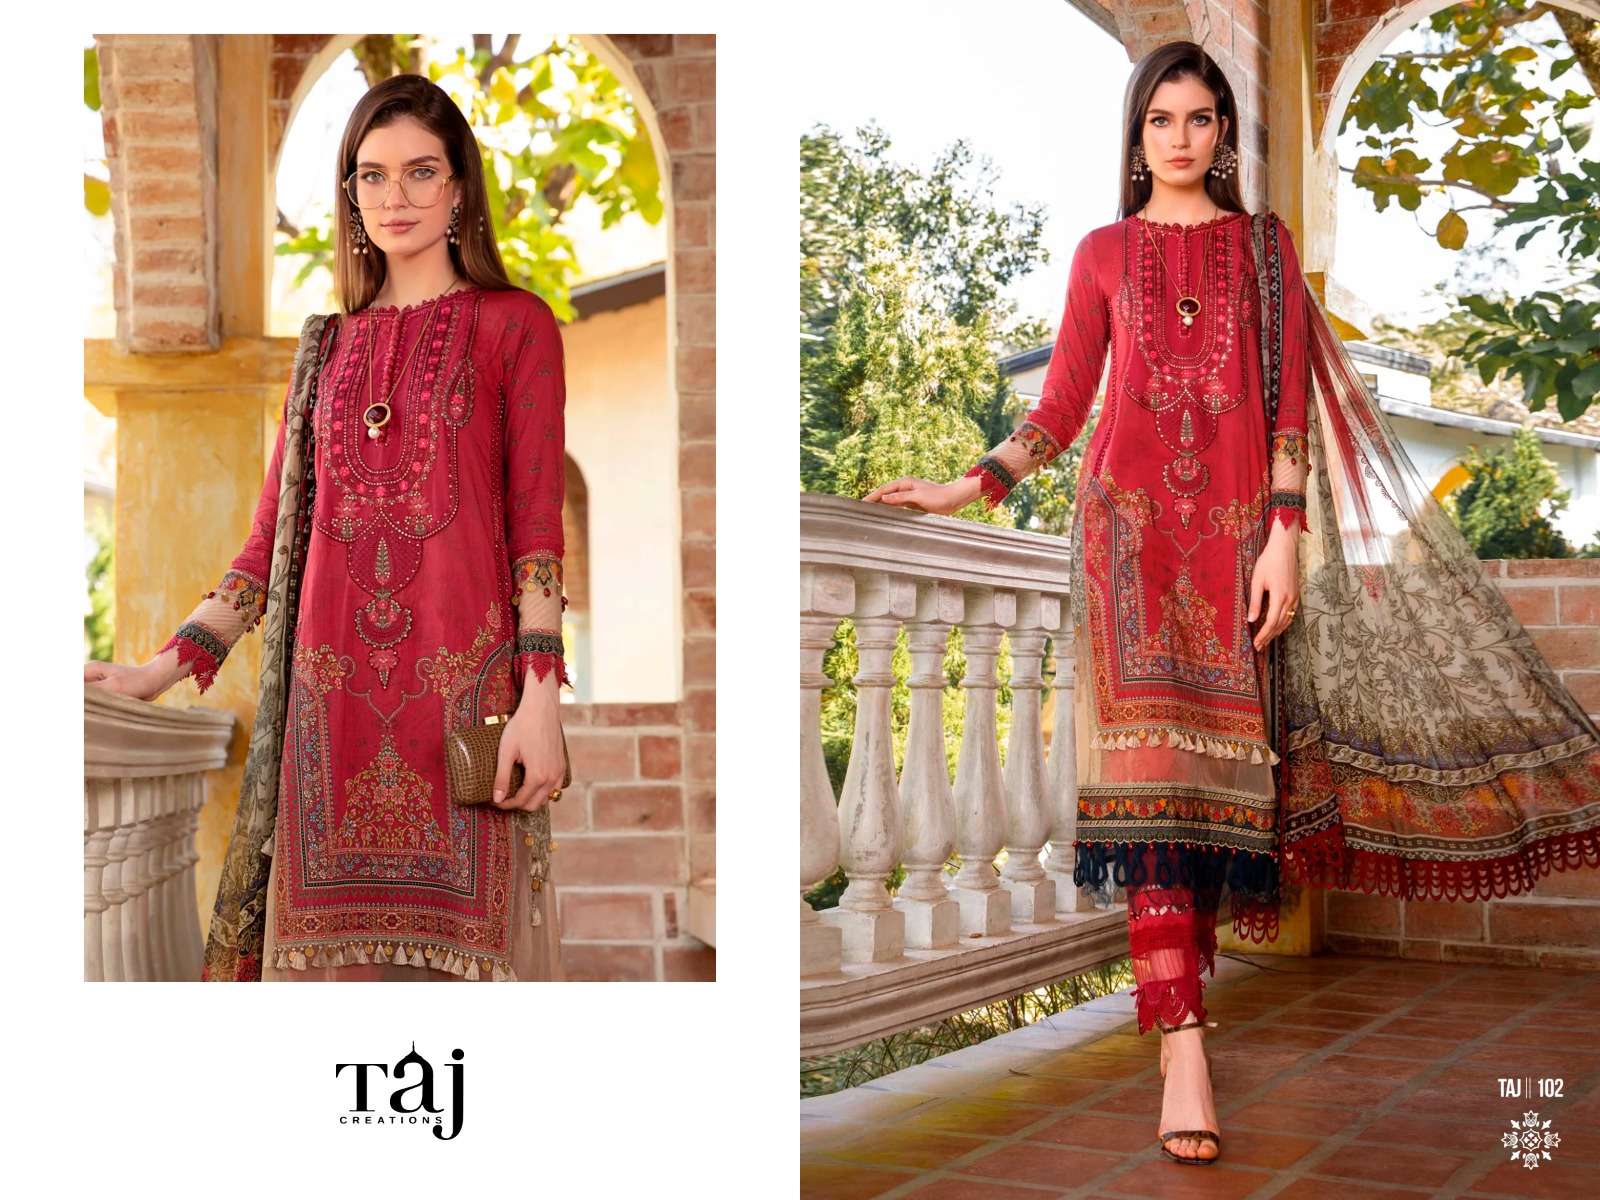 Taj Maria B M Prints Super Hit 2 Chiffon Dupatta Salwar Suits Wholesale catalog